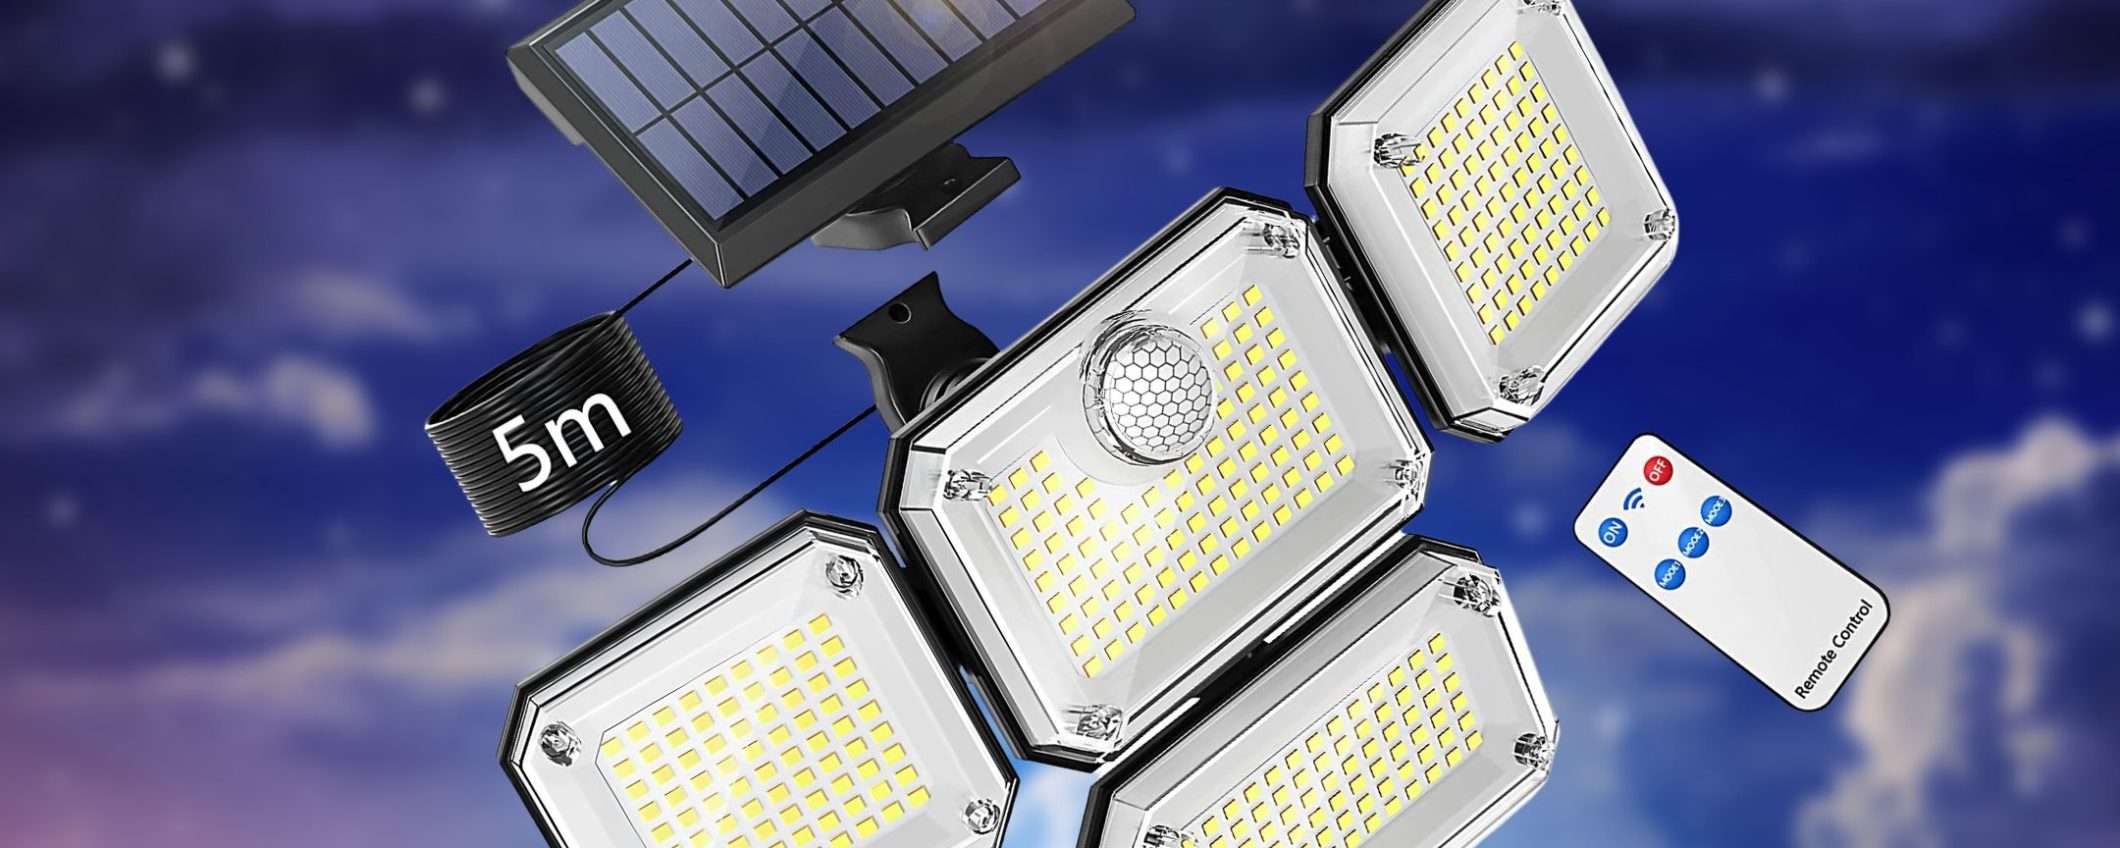 Faro solare 333 LED e 4 teste indipendenti: BESTIA luminosissima a 22€